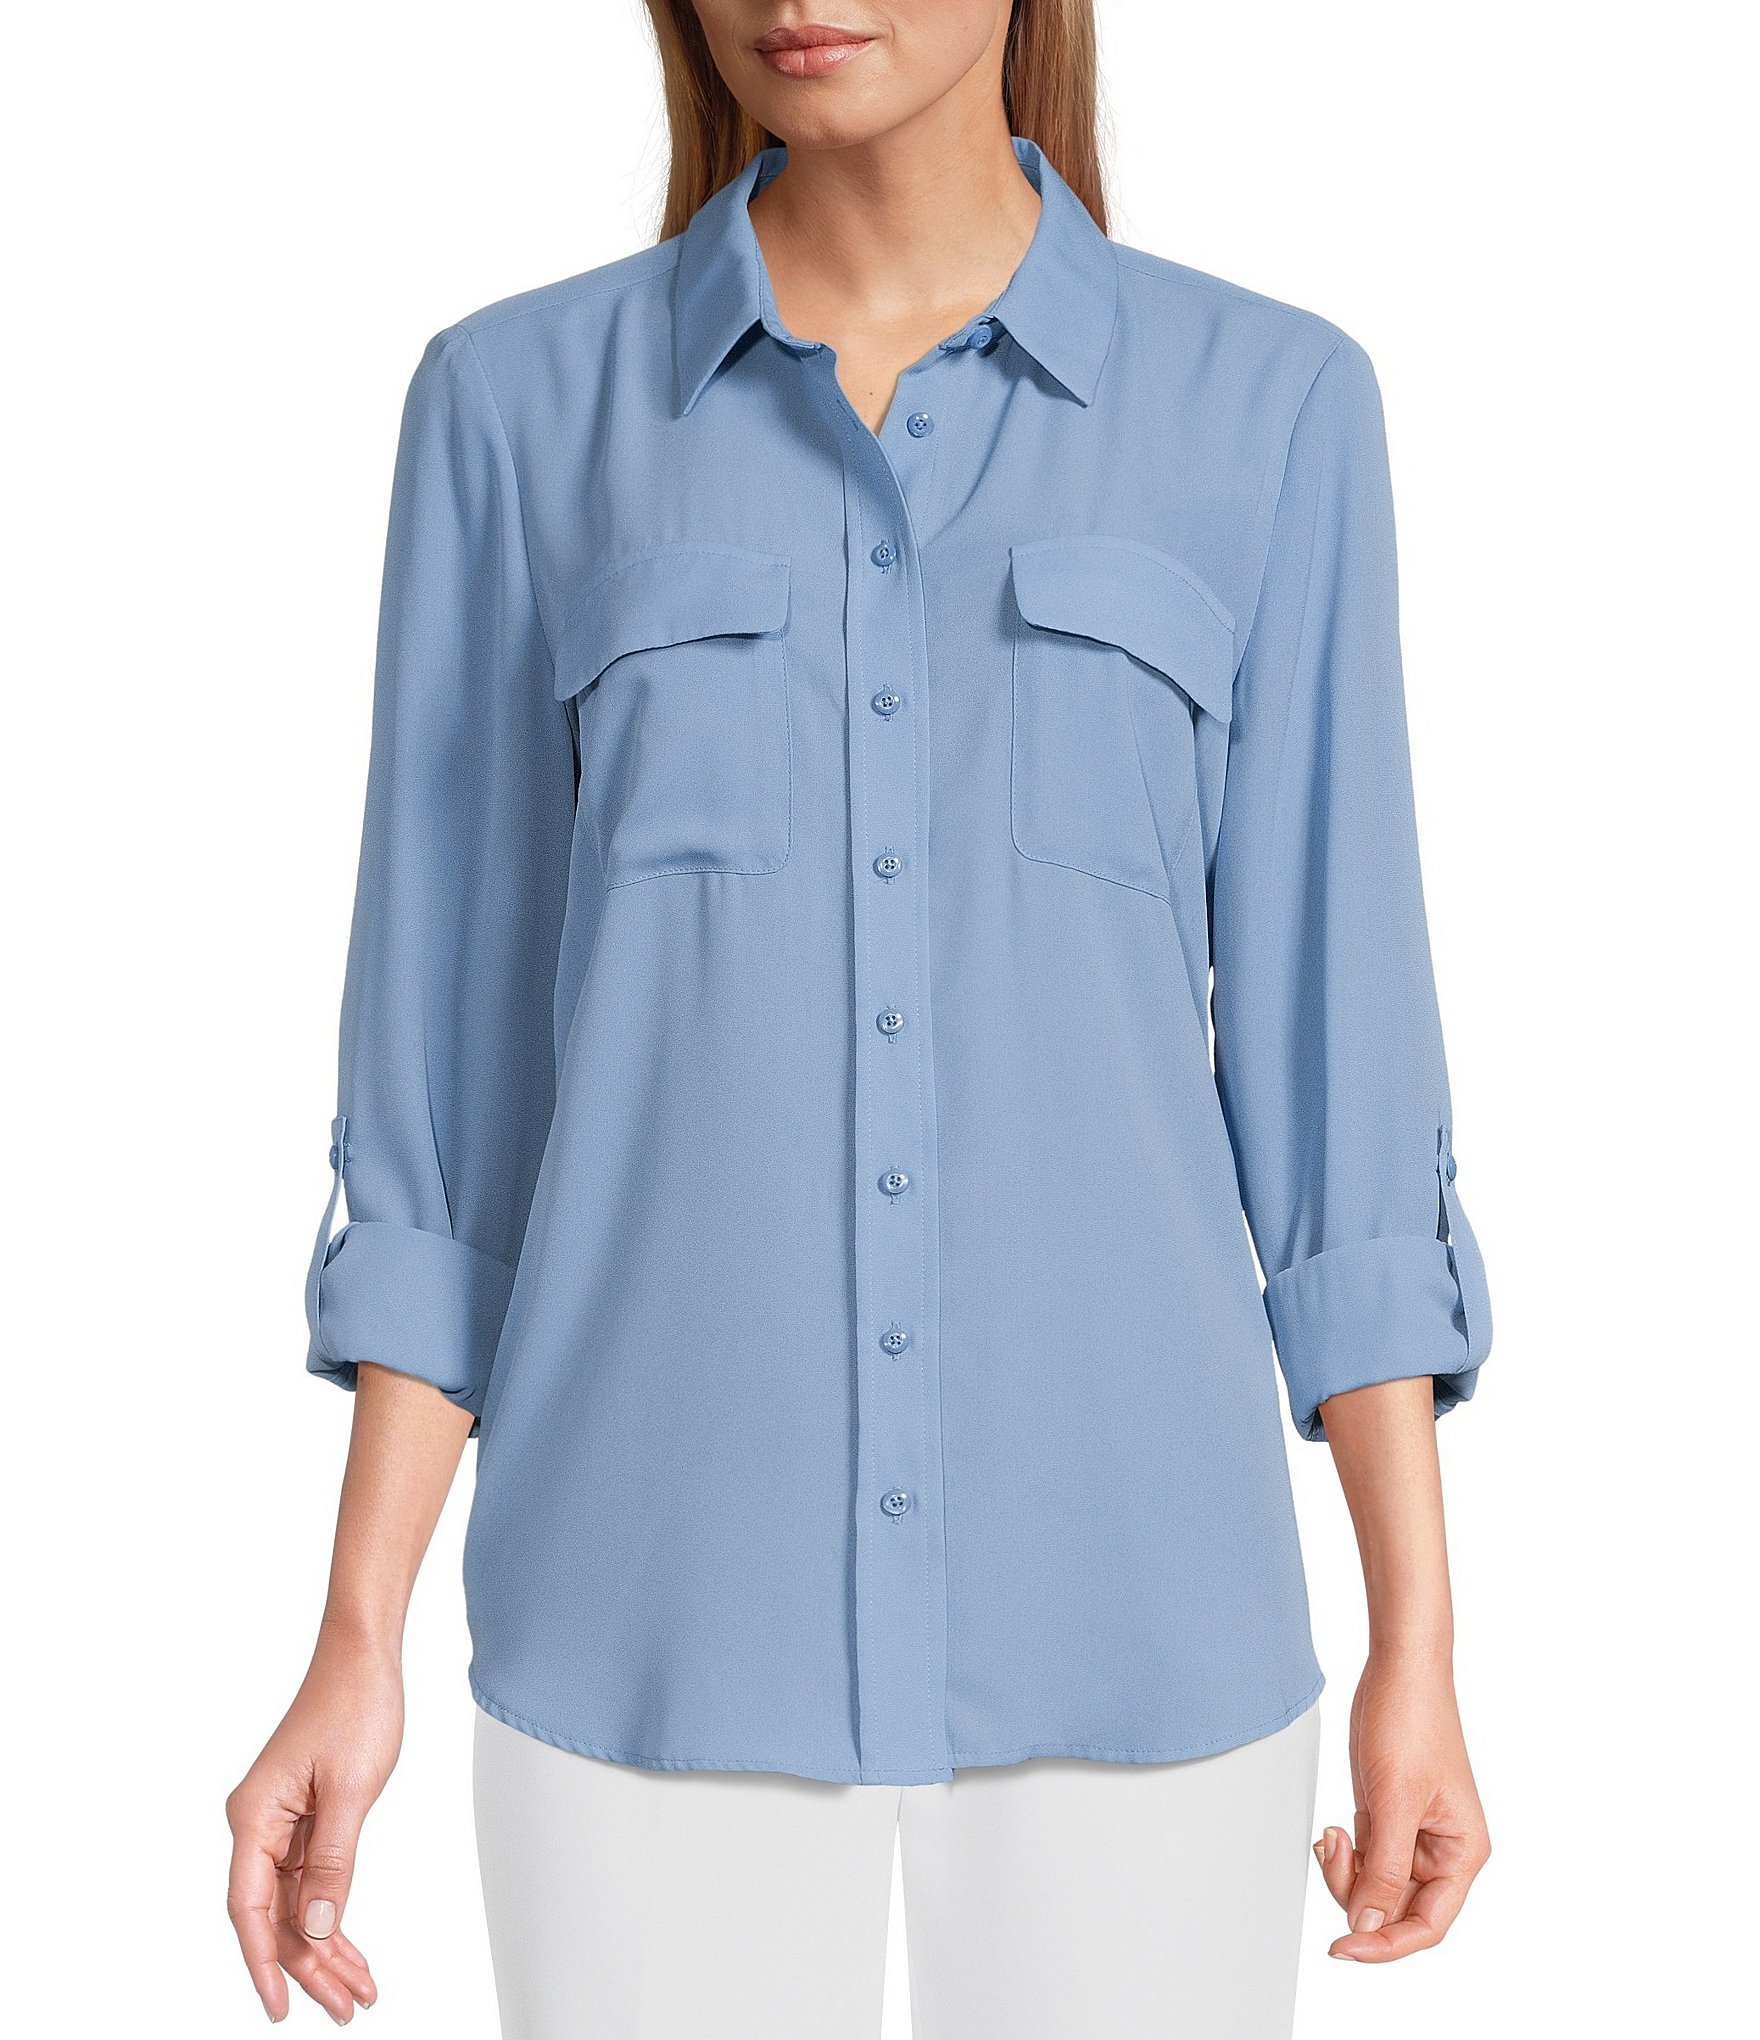 Long Sleeve Petite Casual & Dressy Tops & Blouses | Dillard's